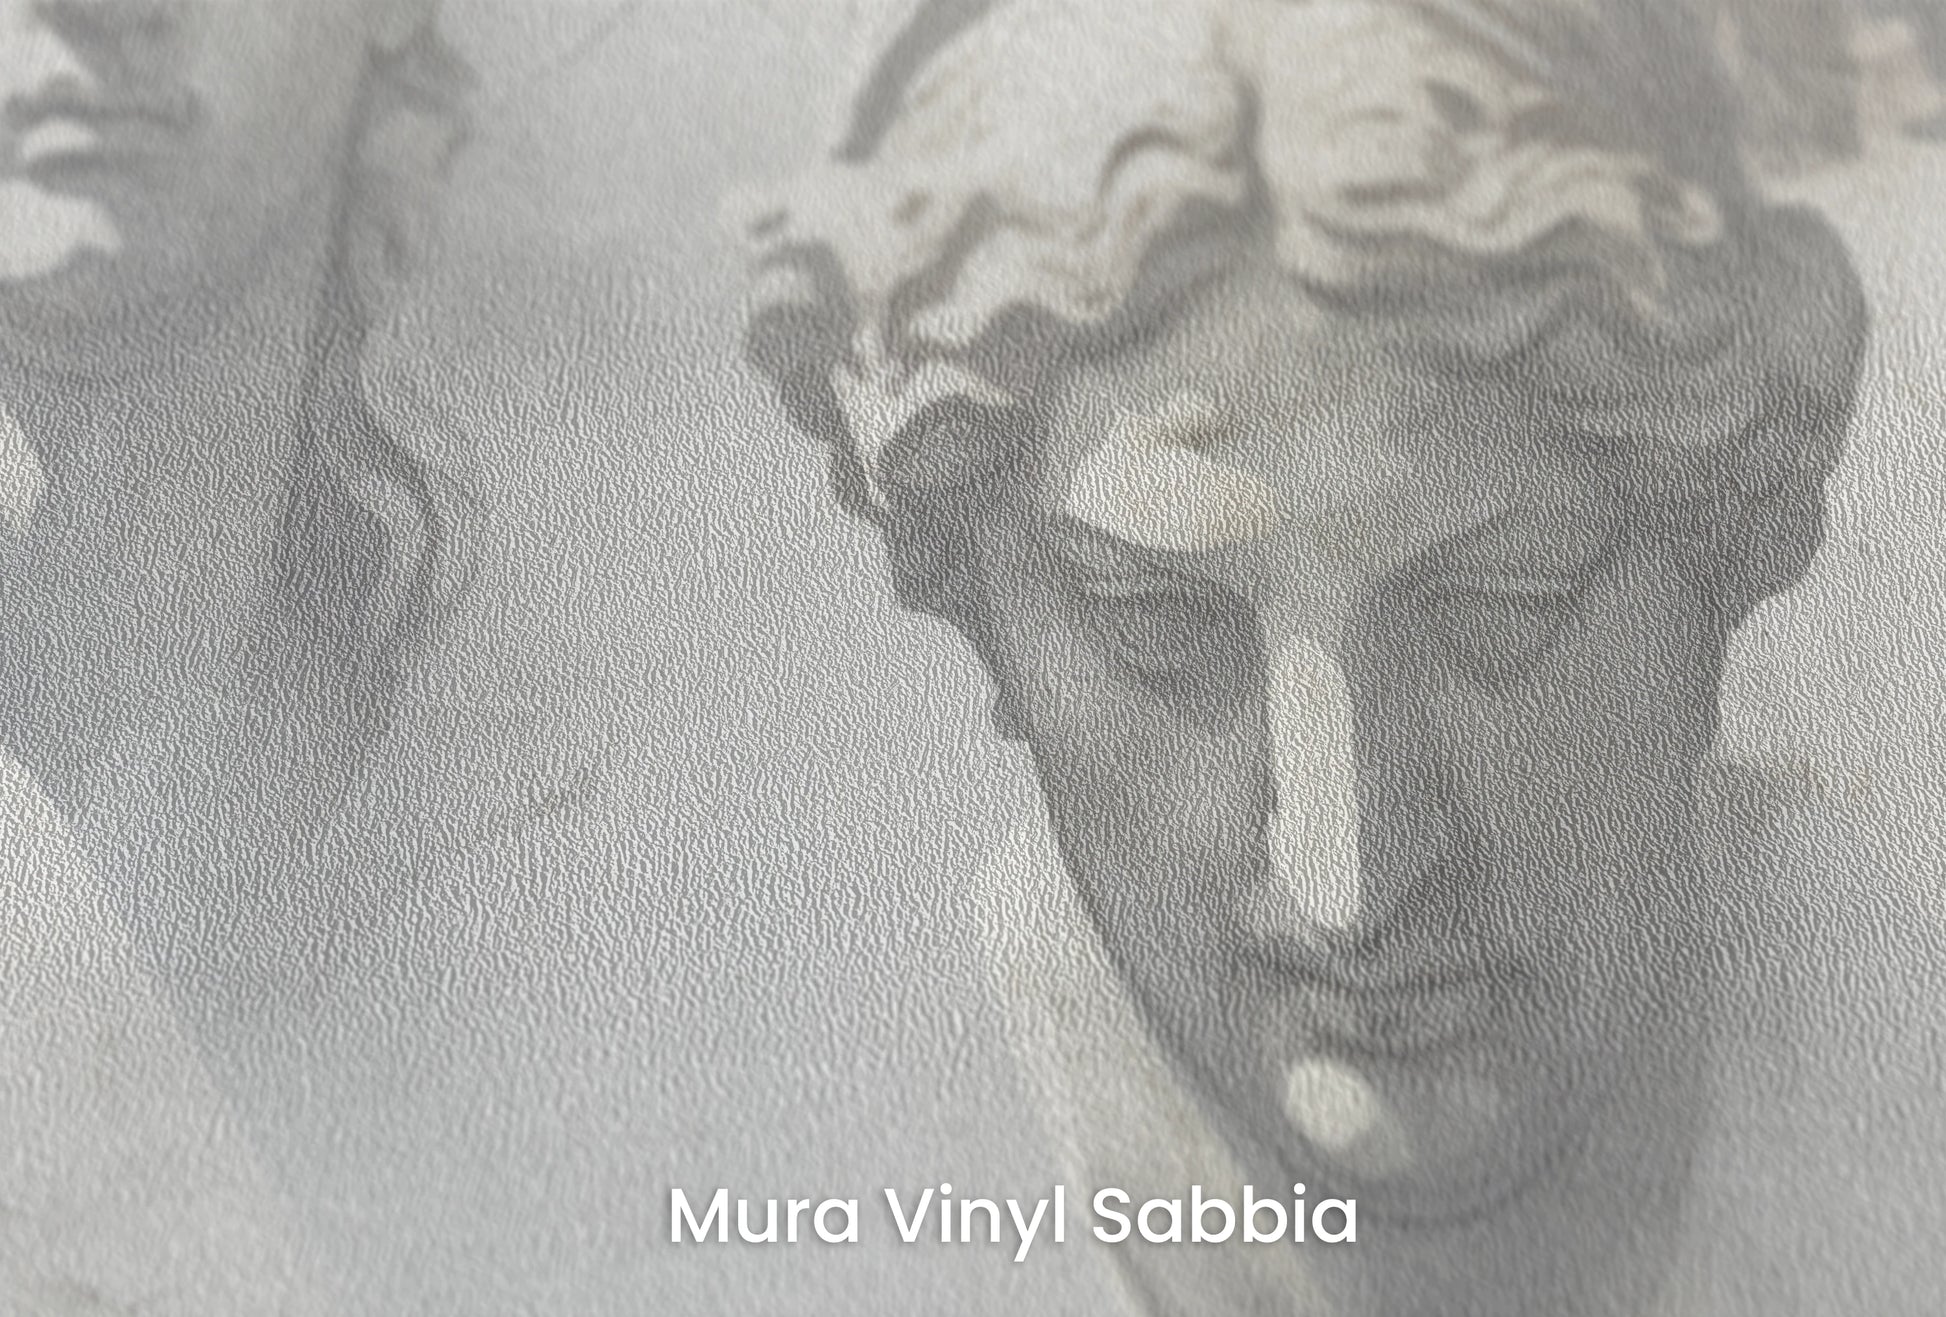 Zbliżenie na artystyczną fototapetę o nazwie The Muses' Grace na podłożu Mura Vinyl Sabbia struktura grubego ziarna piasku.